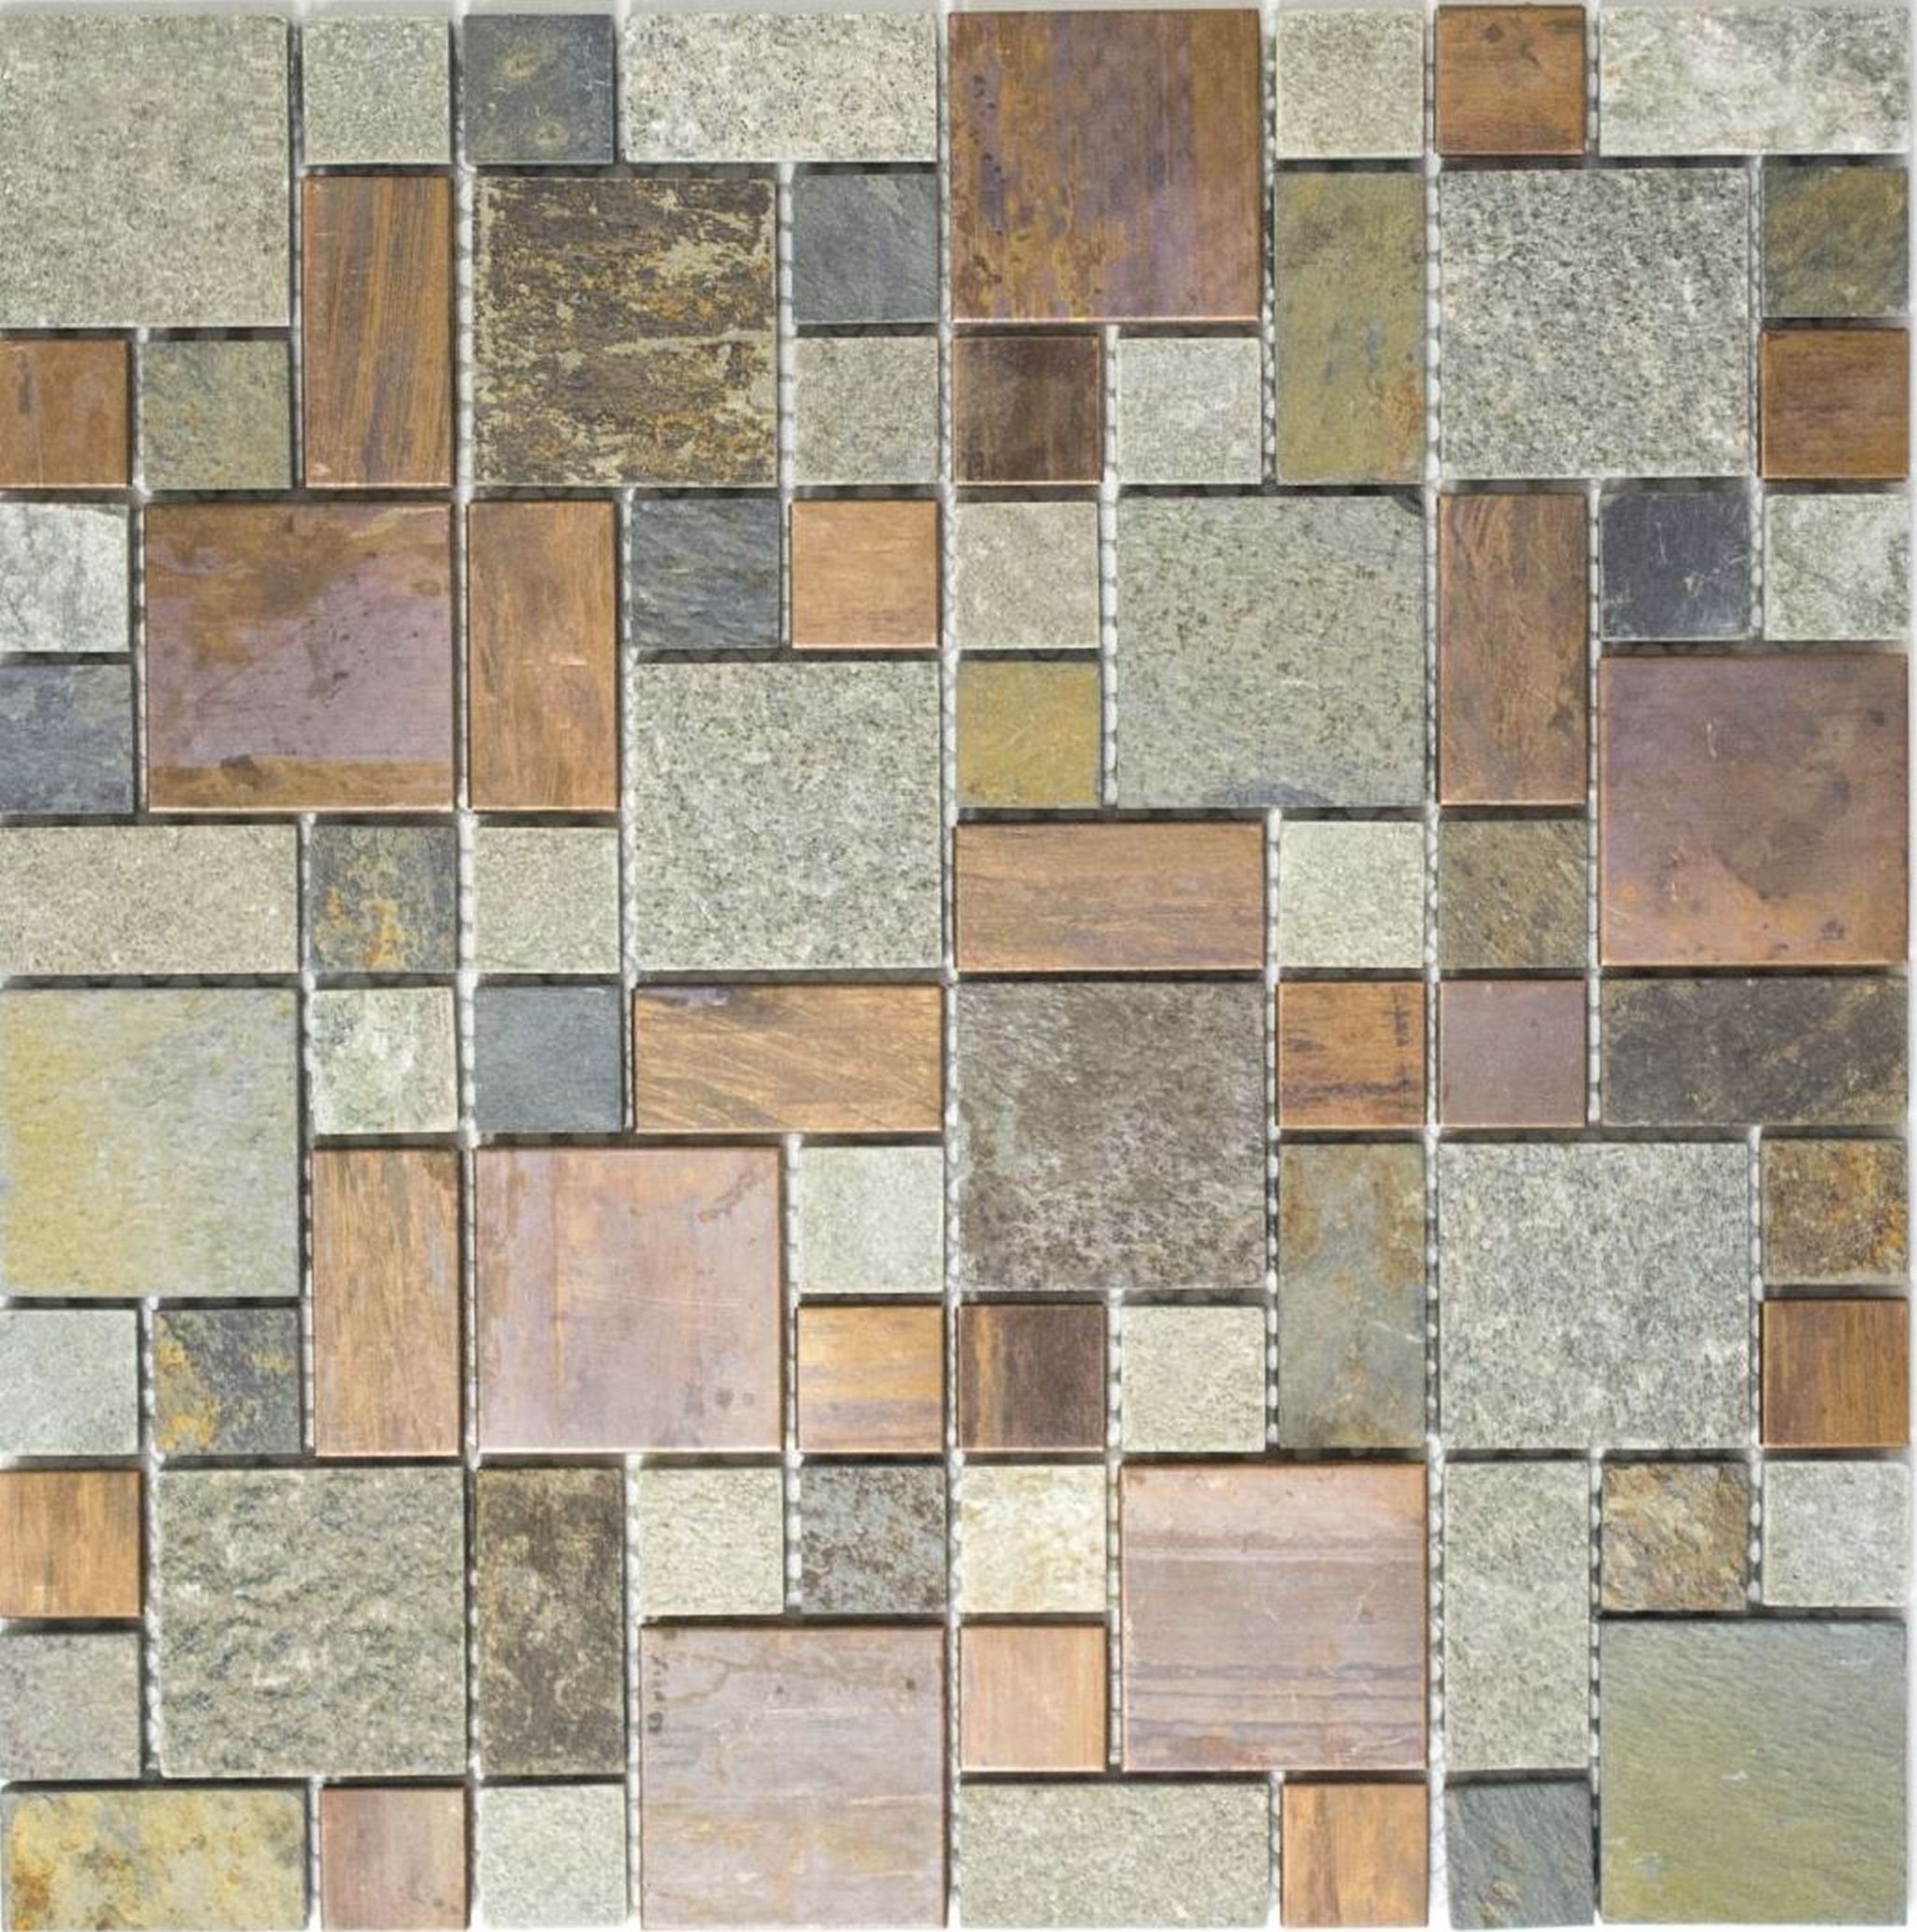 Mosani Mosaikfliesen Kupfermosaik Fliese Kombination rost Küchenrückwand Stein grau